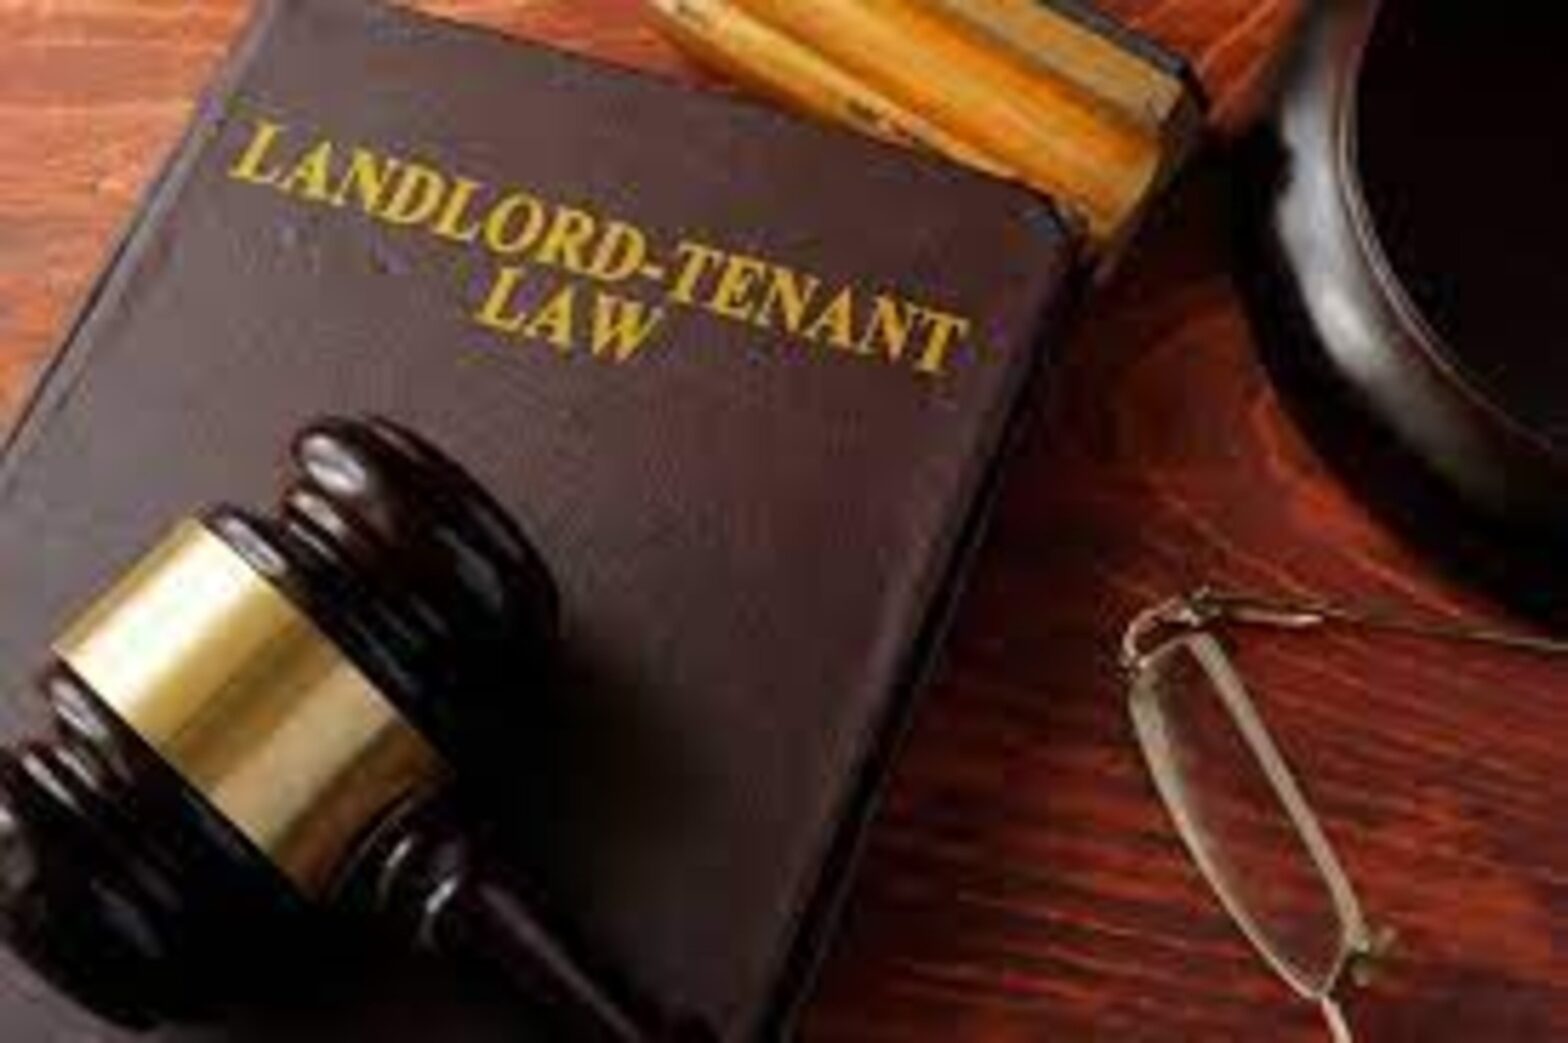 Louisiana Landlord Tenant Law